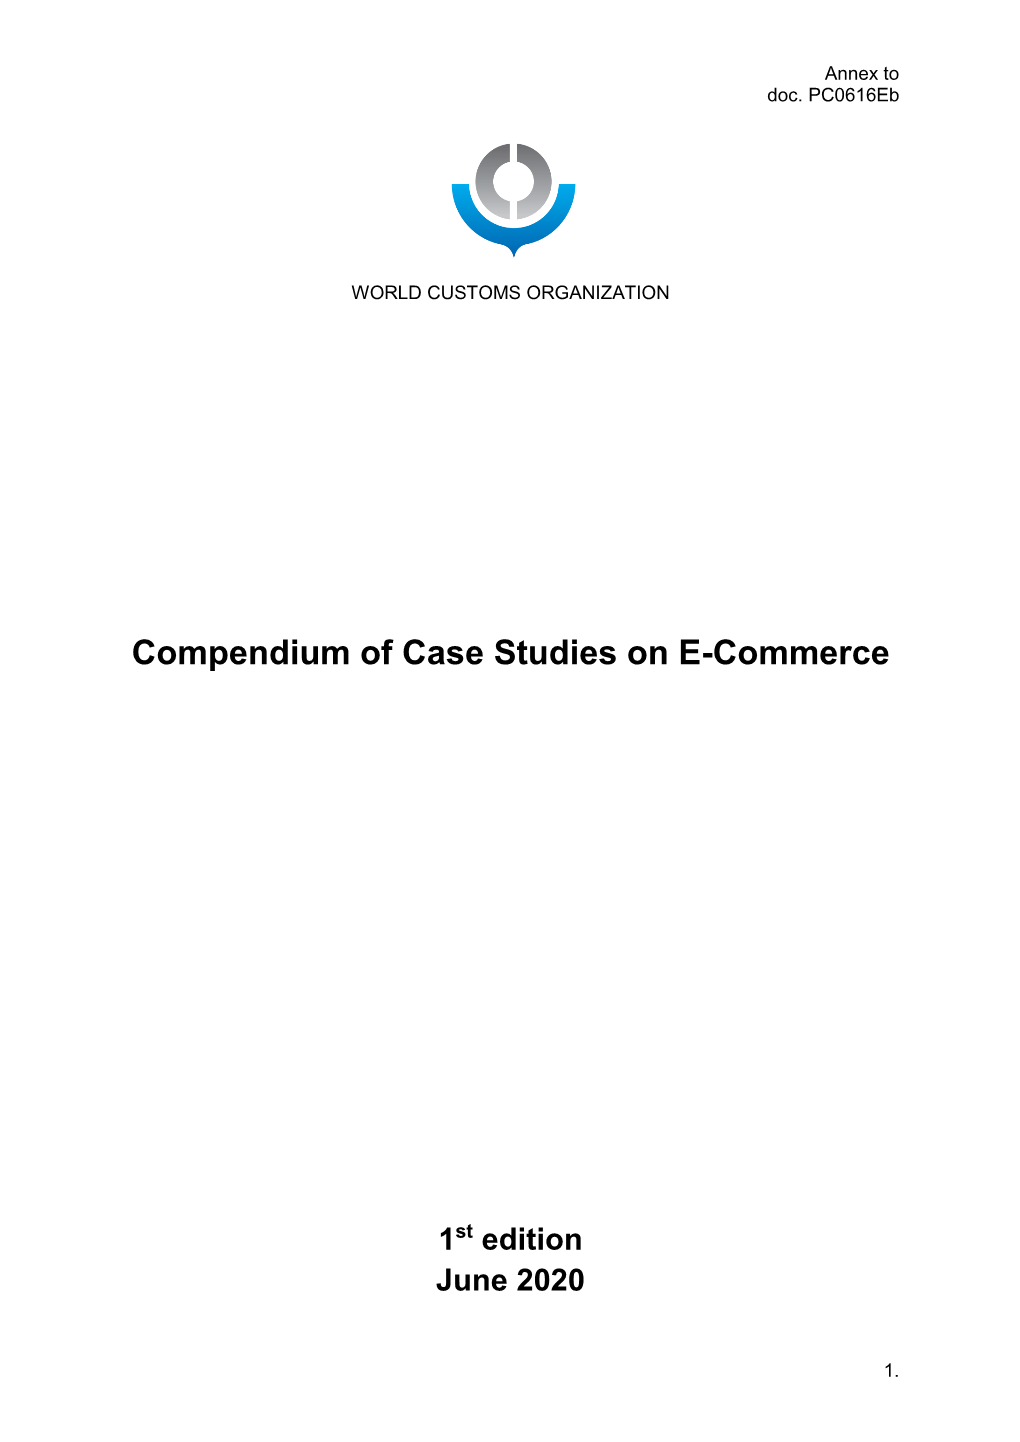 Compendium of Case Studies on E-Commerce